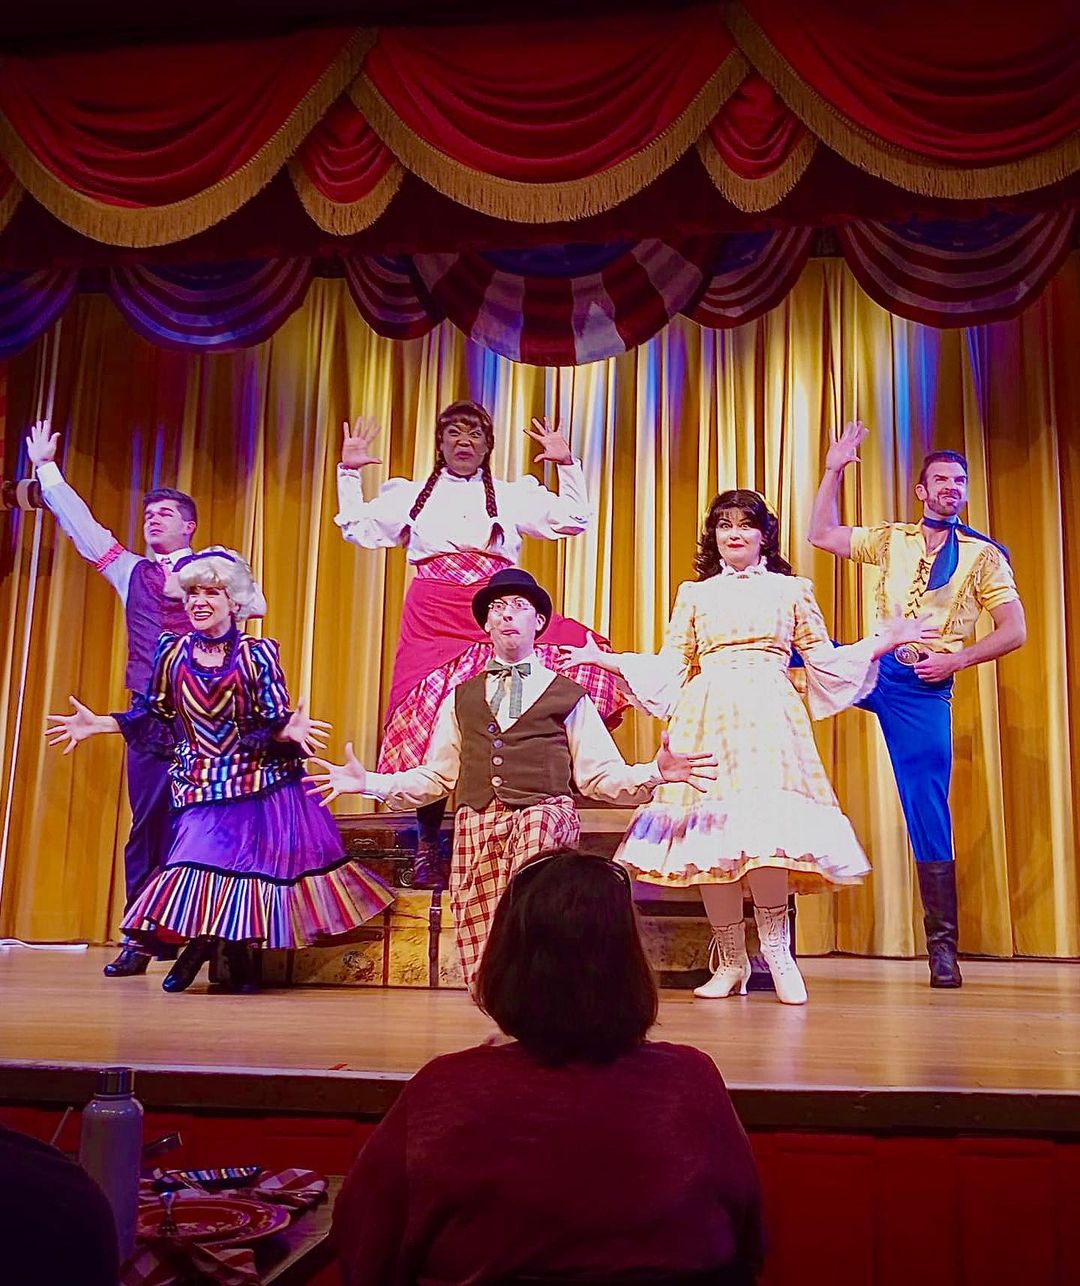 Hoop-Dee-Doo Musical Revue - Cena y espectáculo en Disney (Fort Wilderness) (7)